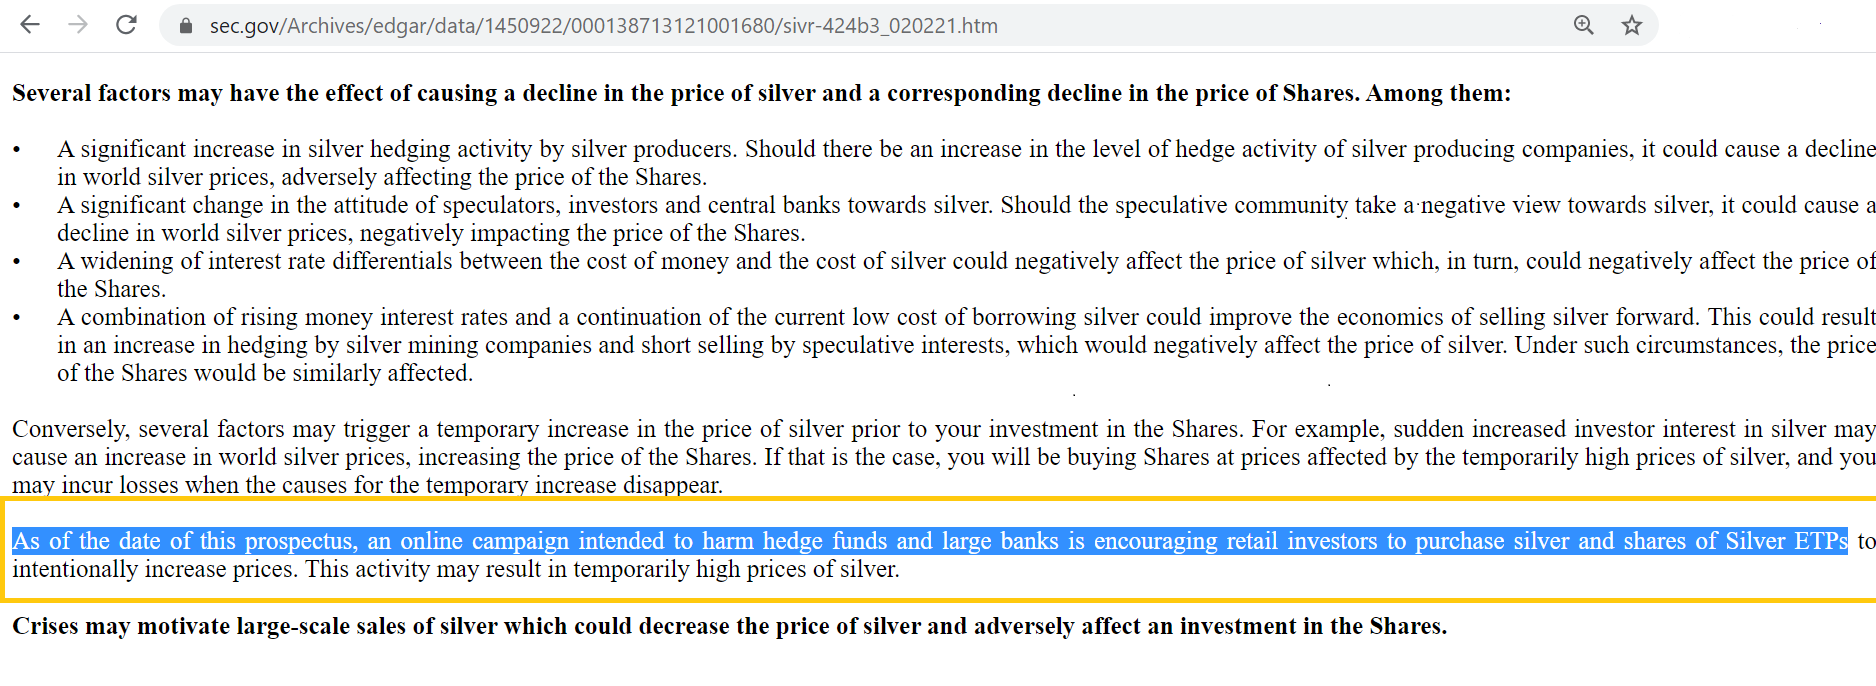 Учредитель серебряного индексного фонда предупреждает, что покупка серебра повредит хедж-фондам и крупным банкам